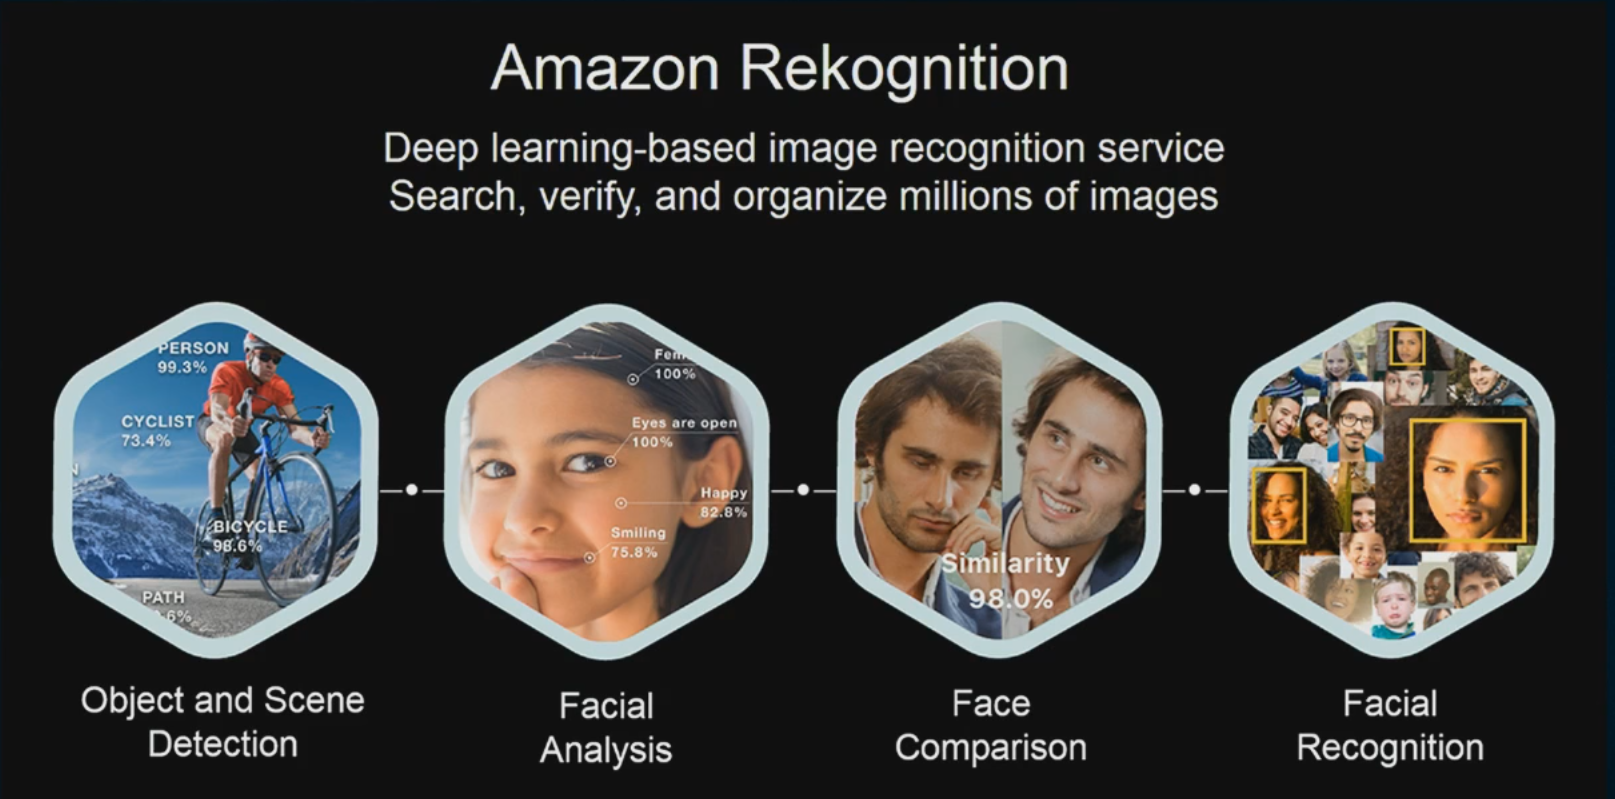 Legisladores questionam a credibilidade do reconhecimento facial da Amazon em motivos raciais